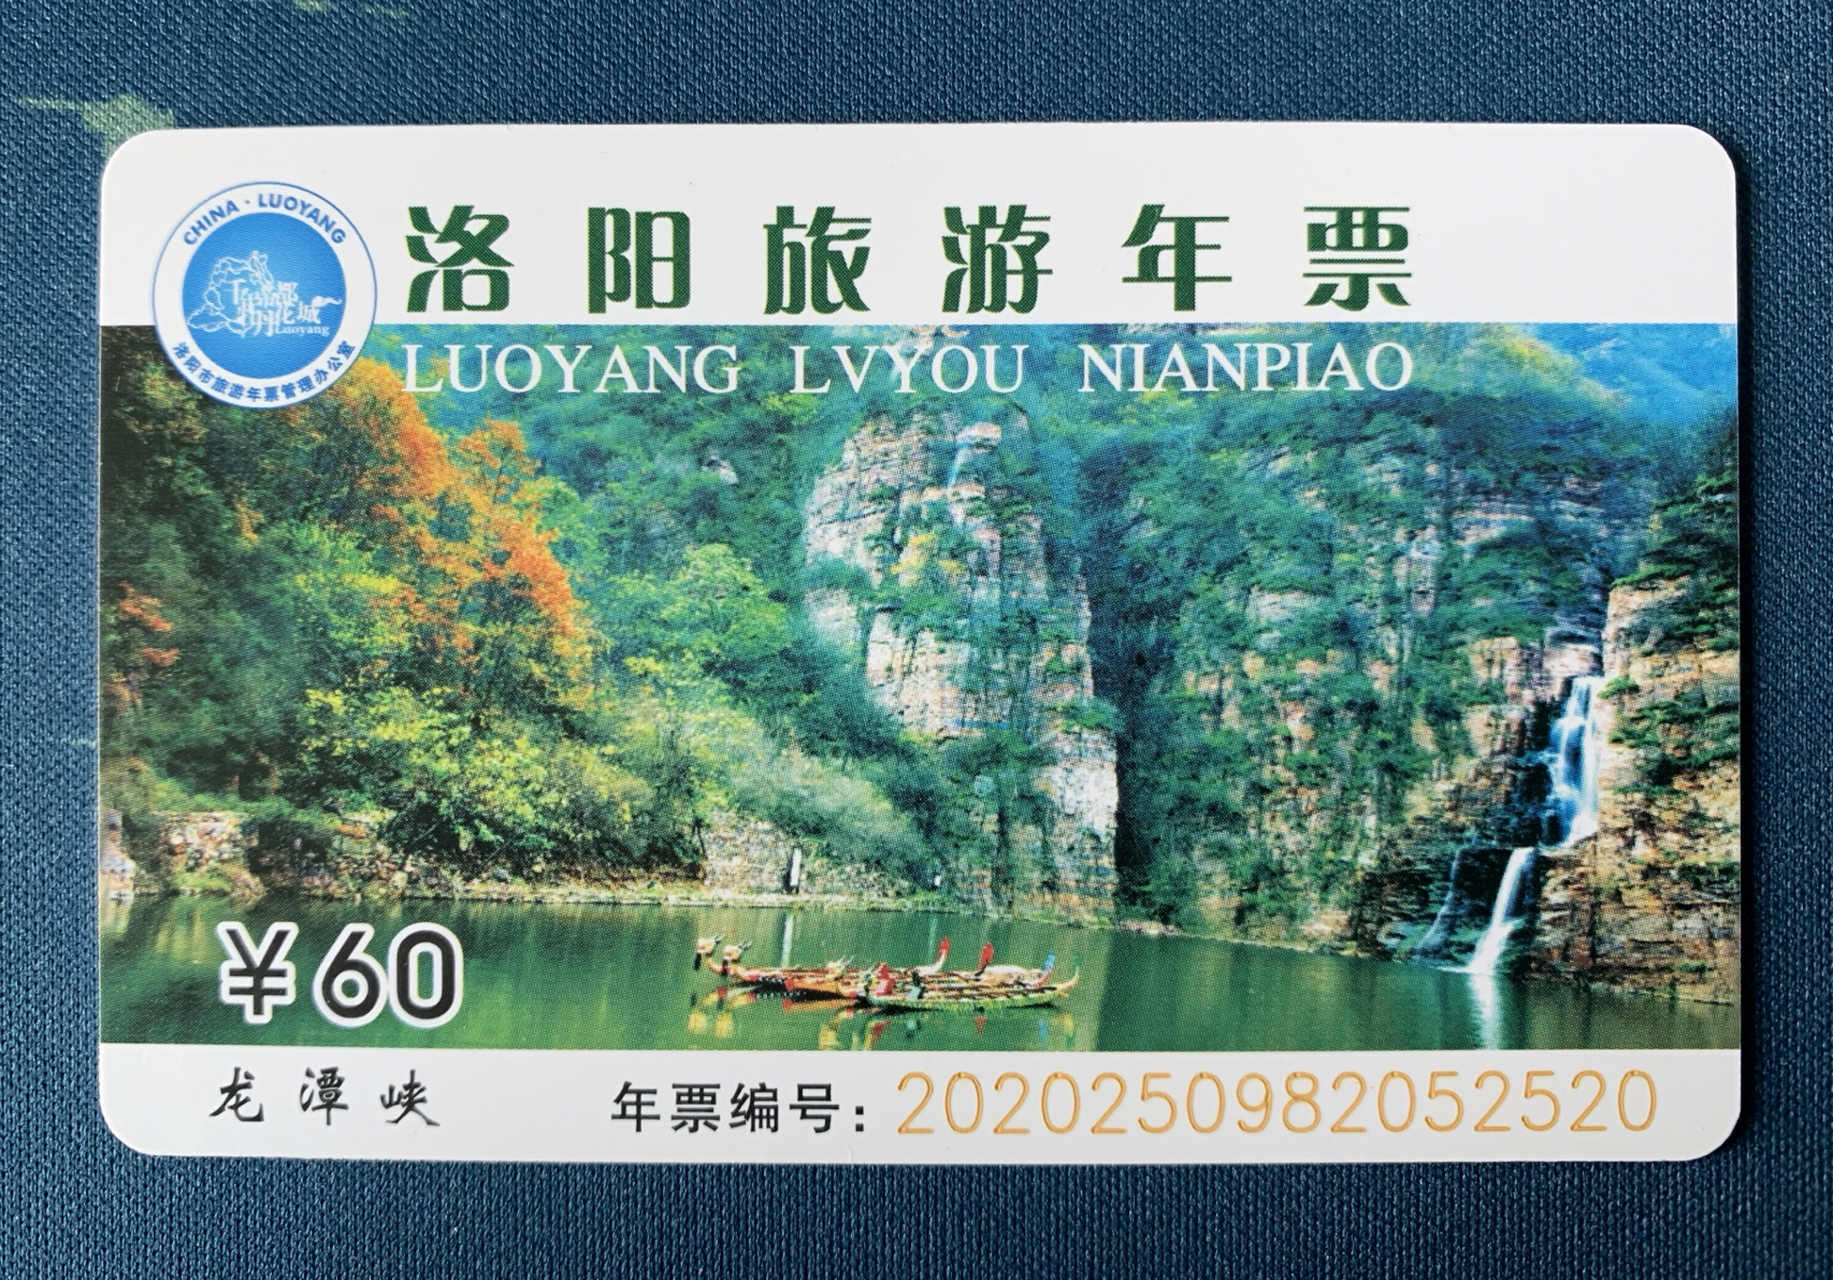 45元洛阳旅游年票共20万张,截止5月18日8:00已售出137万张,剩余6